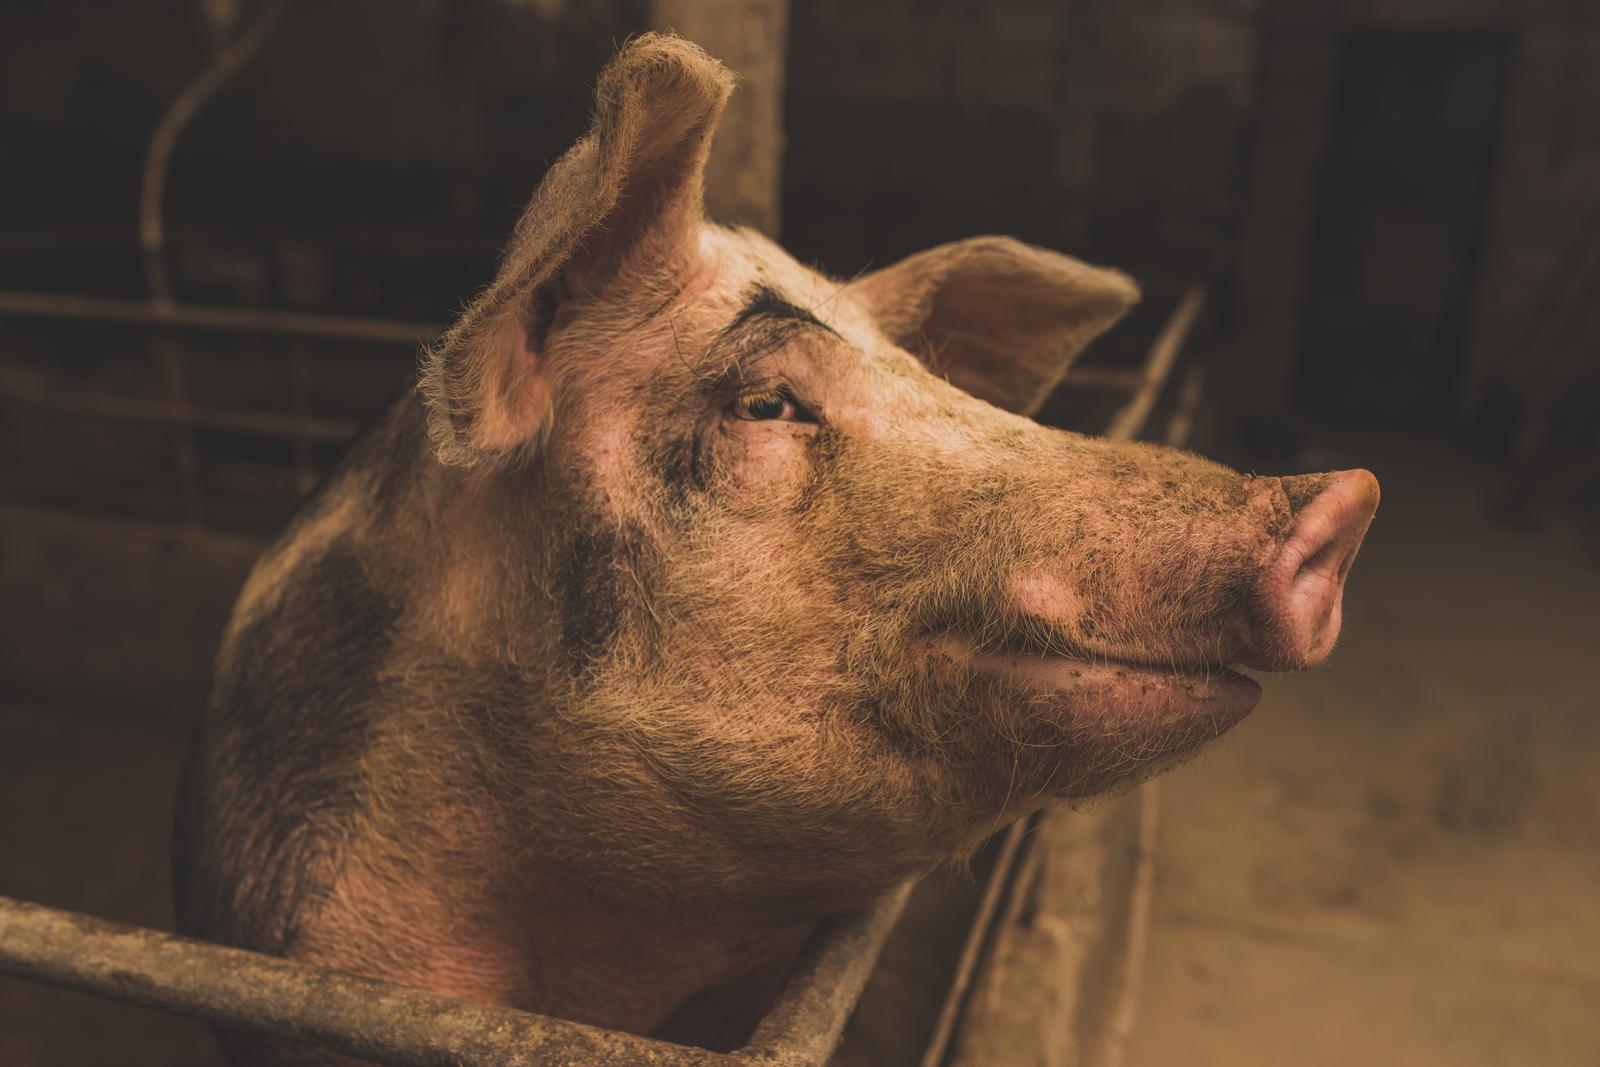 ESTPIG OÜ - Raising of swine/pigs in Estonia